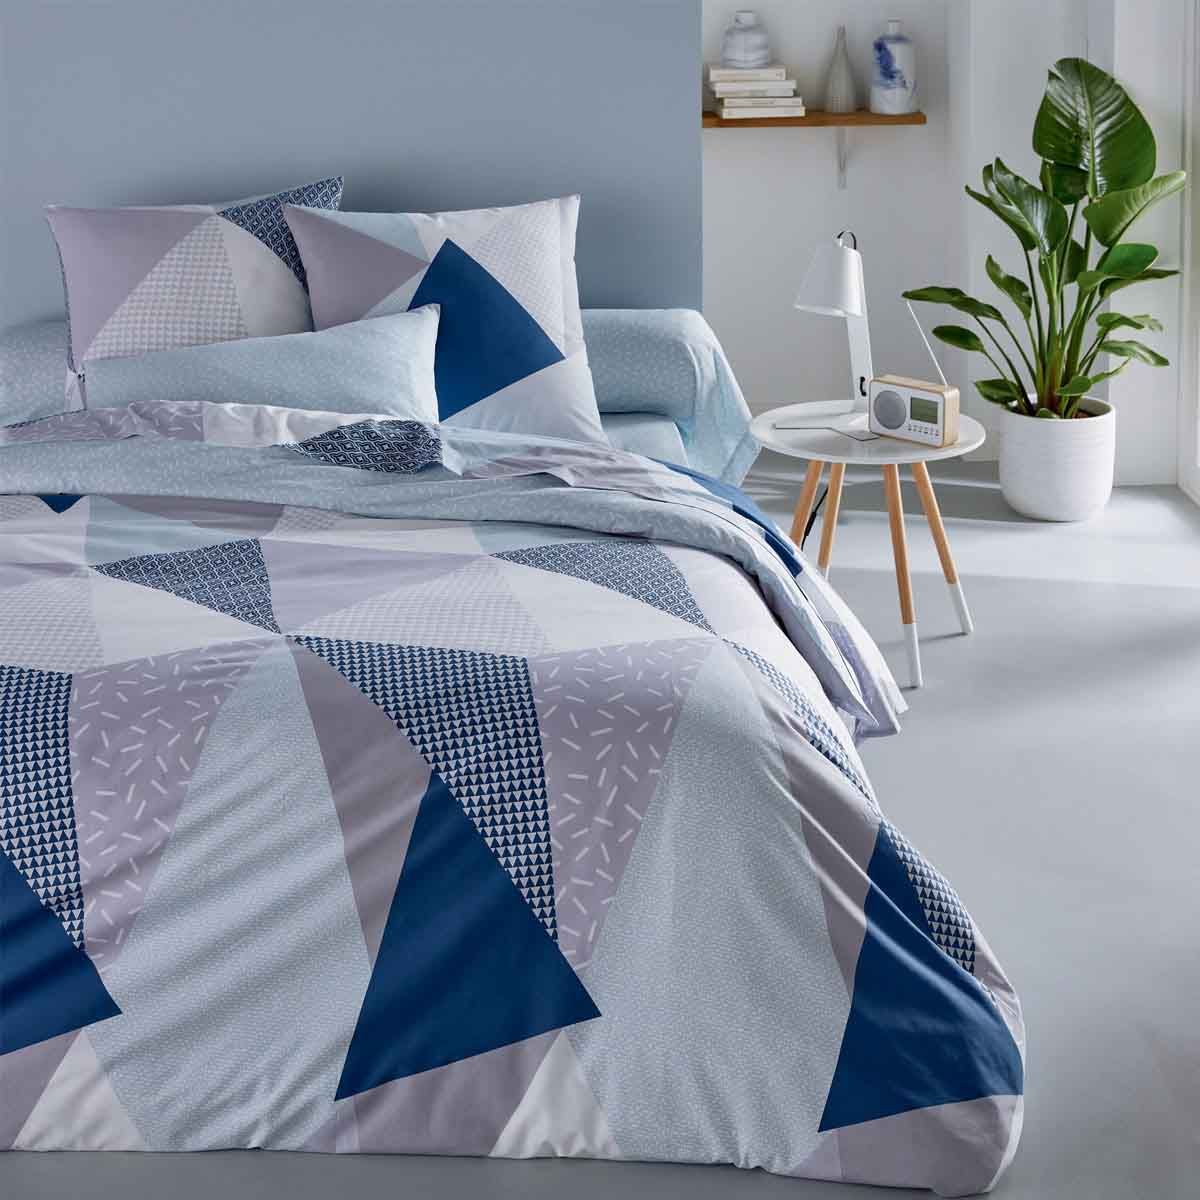 Parure de lit avec Housse de Couette et taies d'oreiller en Flanelle 100 % Coton brossé Motif Tartan Bleu Marine King Size